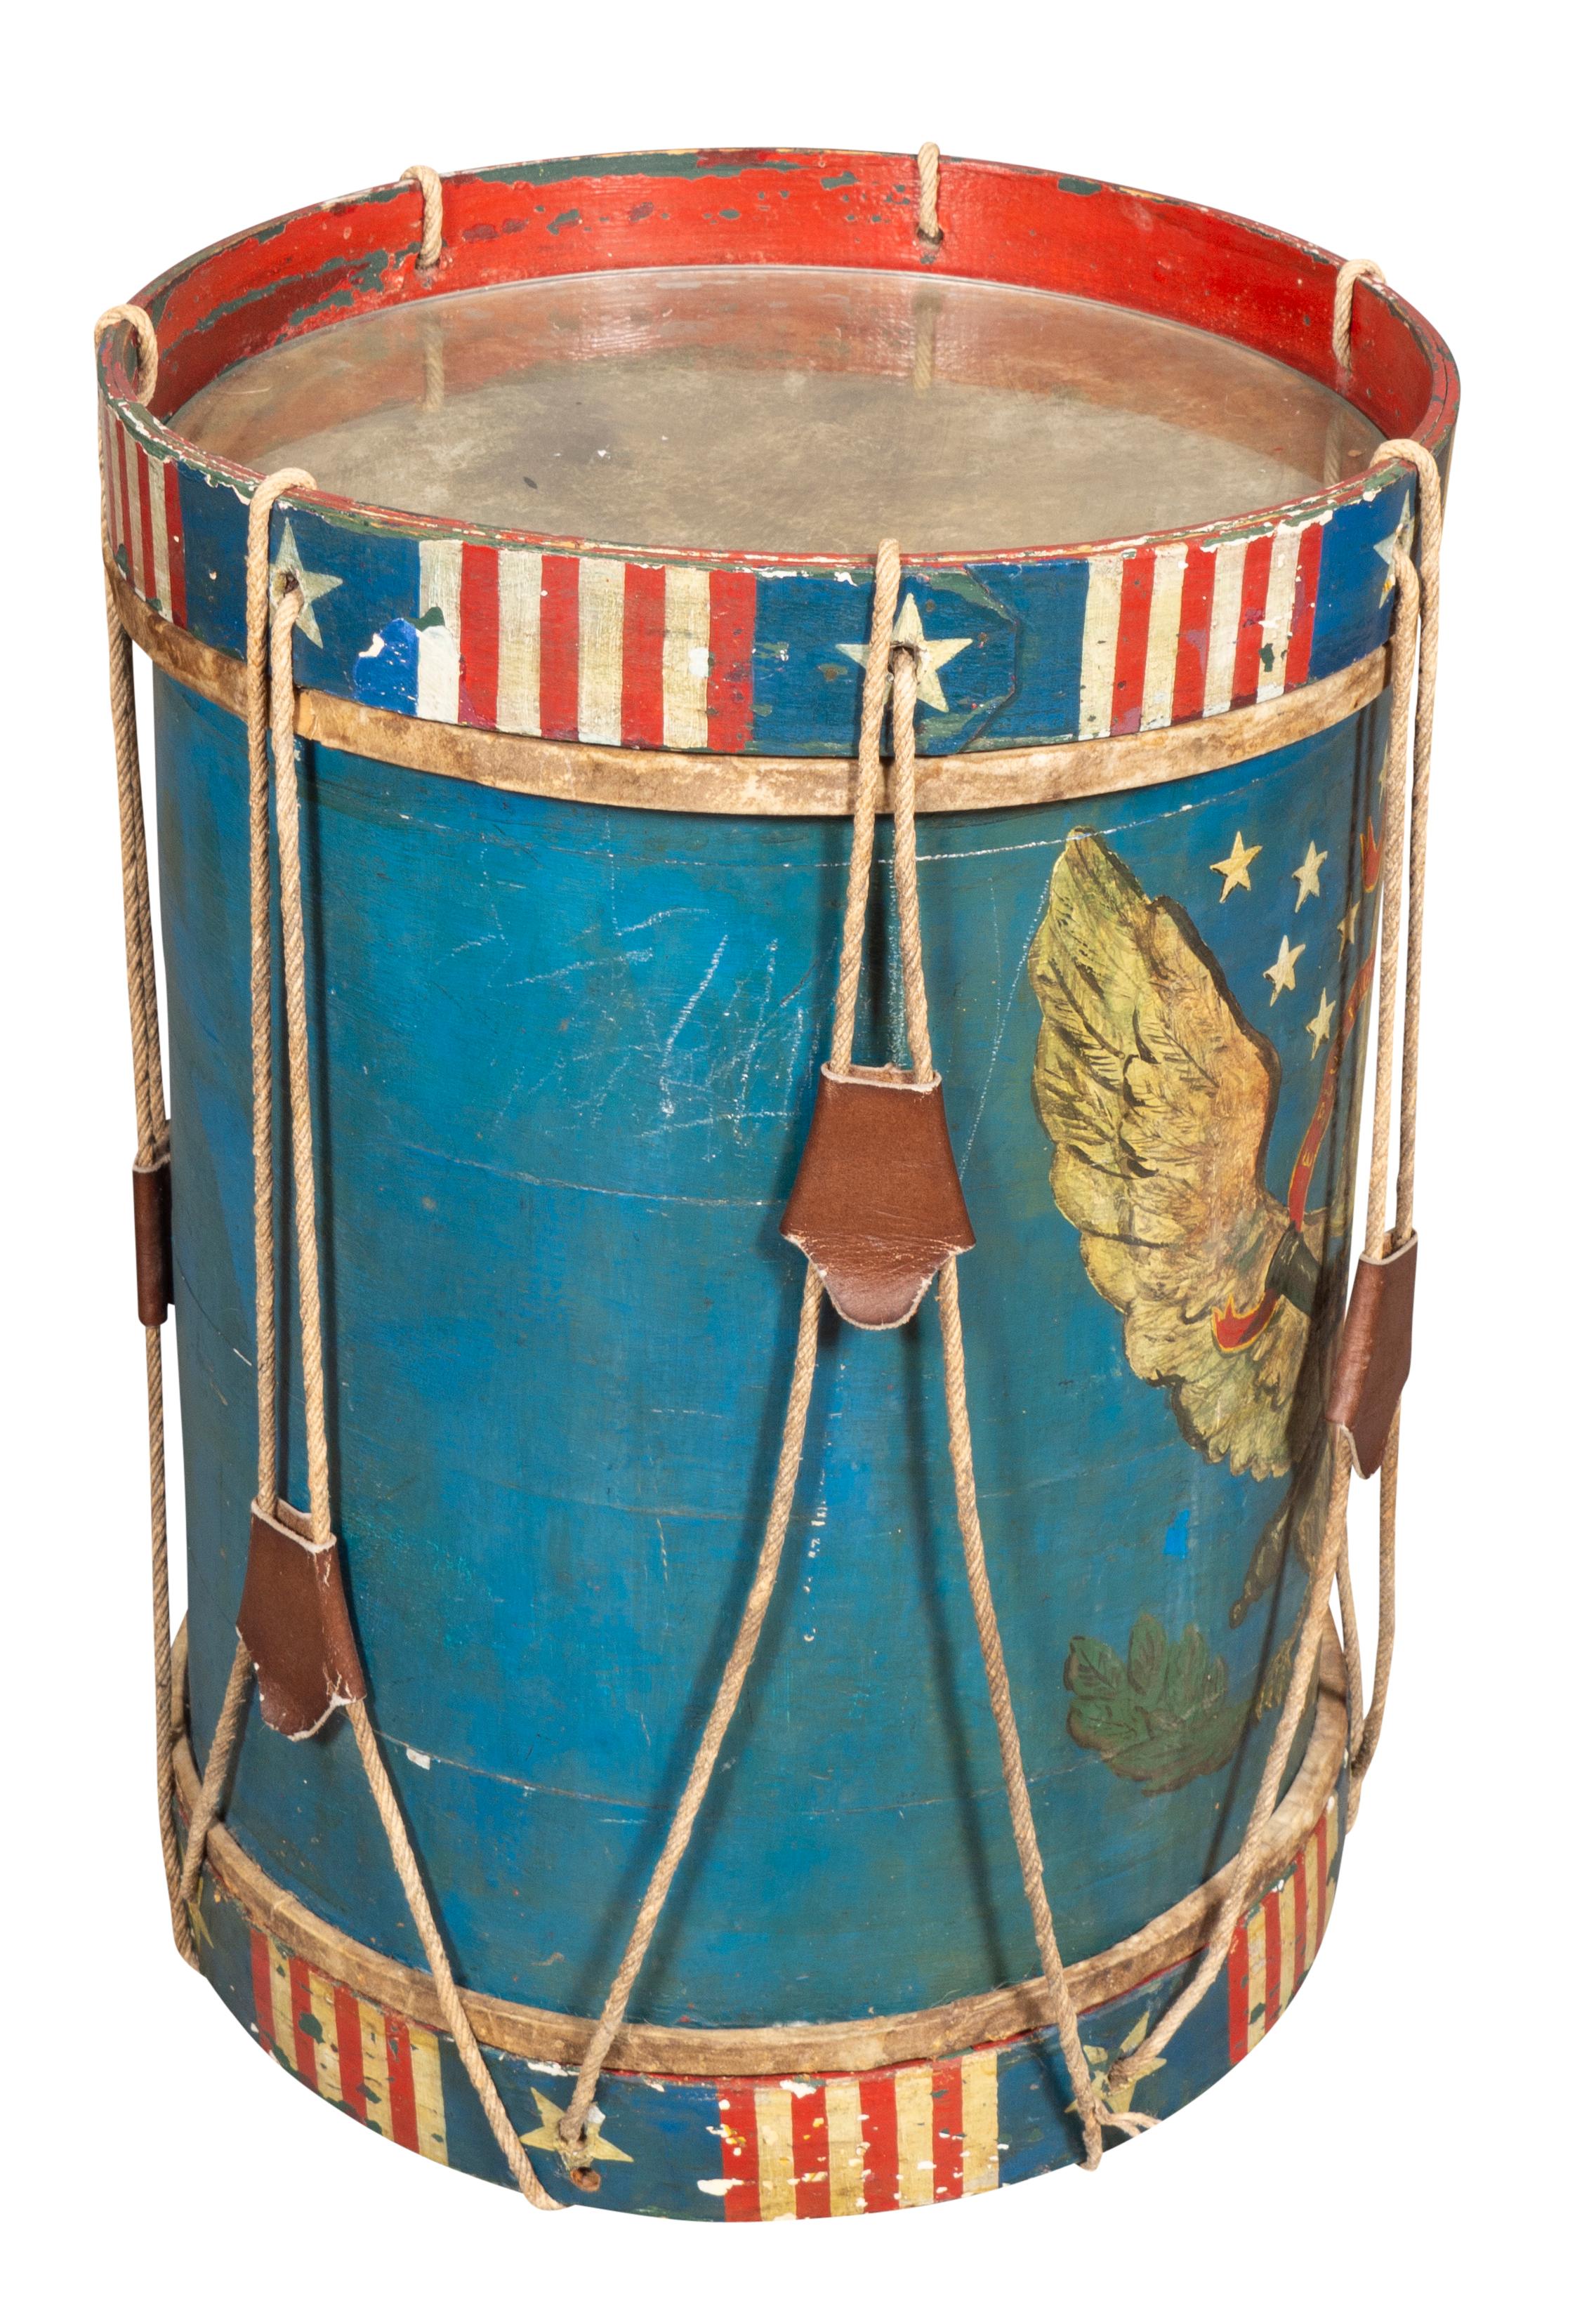 Cylindrique avec un bouclier peint de treize étoiles avec une décoration générale rouge, blanche et bleue. Vellum sous le plateau en verre.